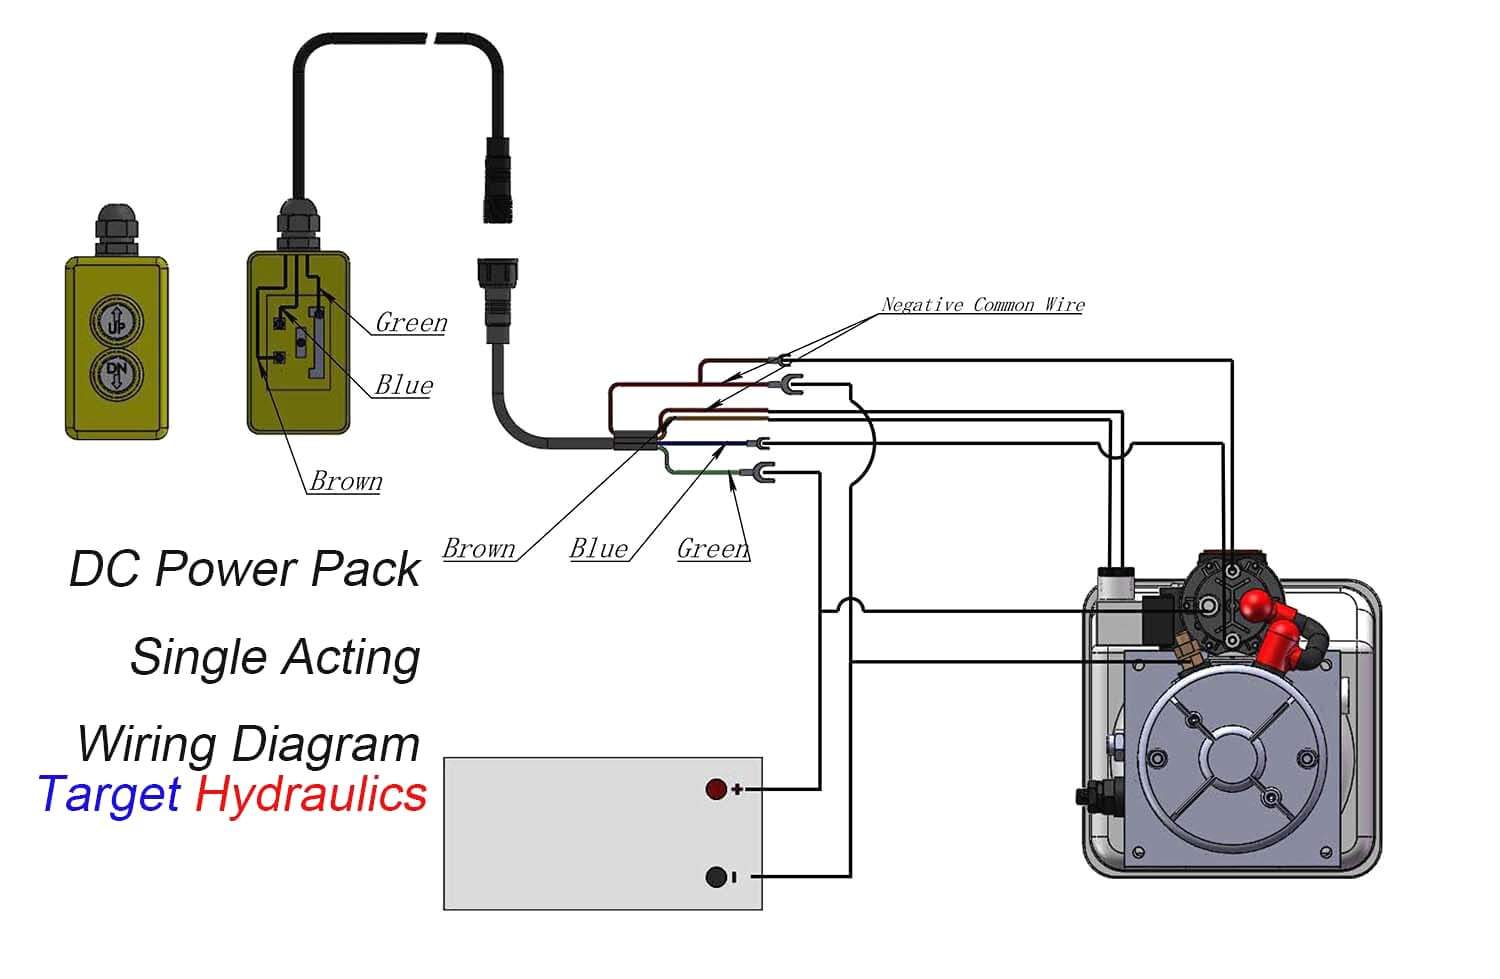 Wiring Diagram For Hydraulic Dump Trailer